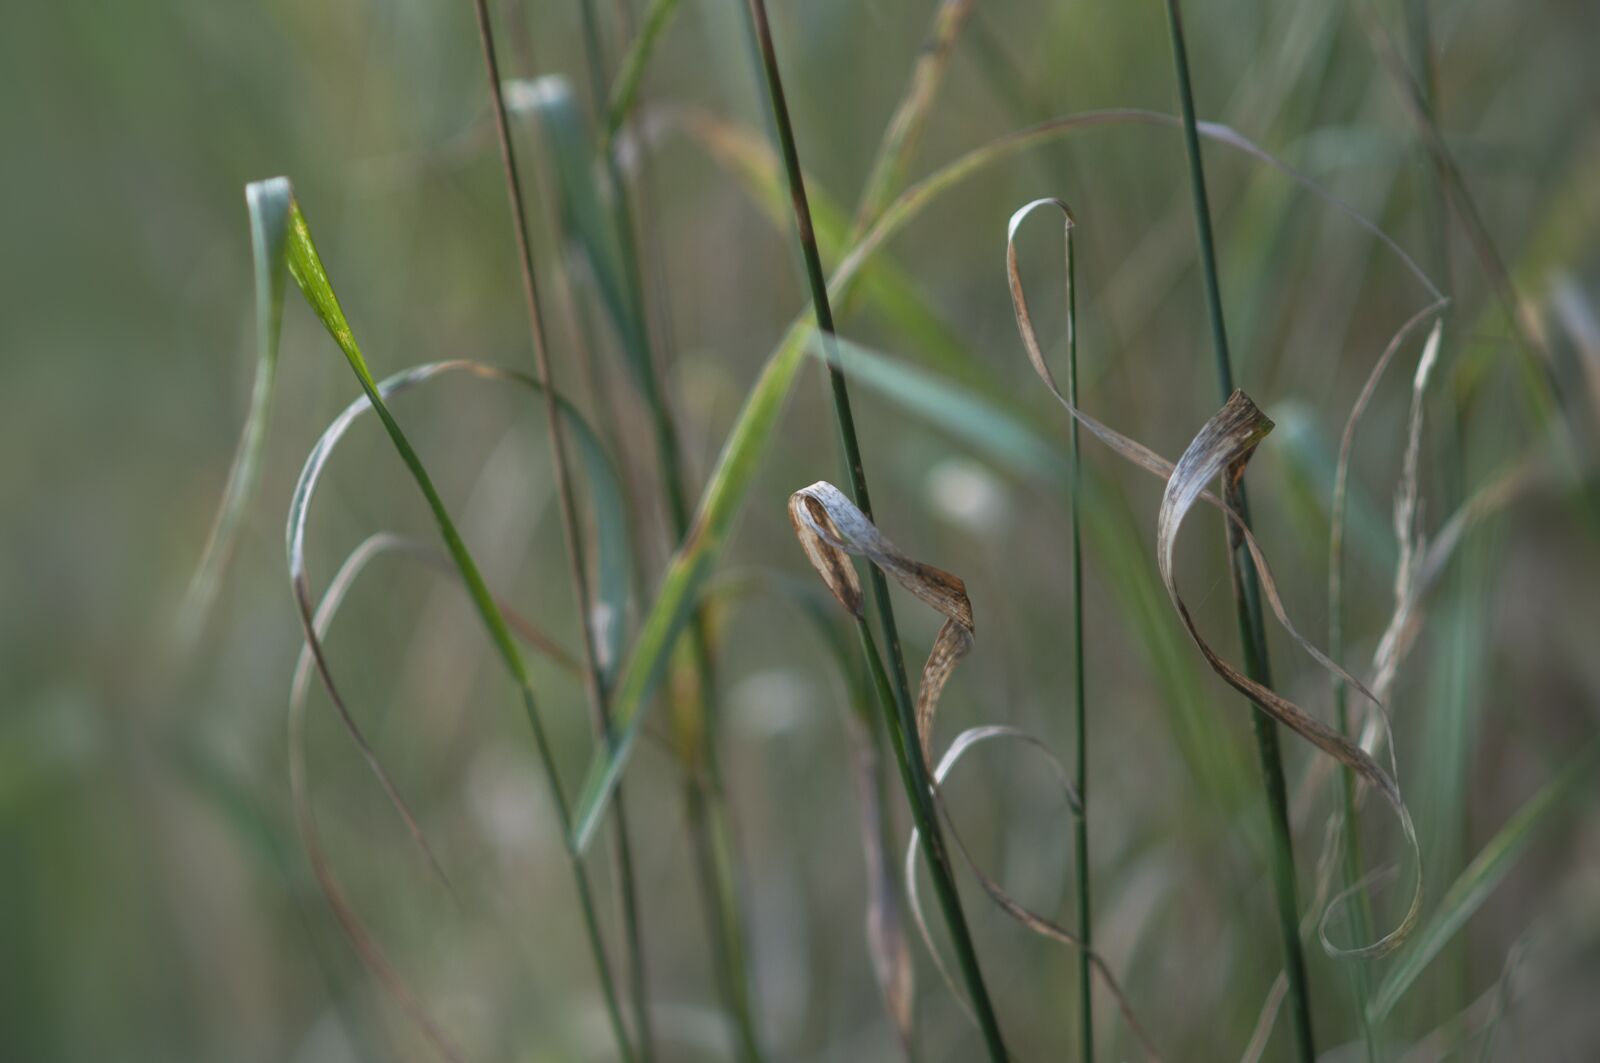 Nikon D90 sample photo. Grass, detail, simplicity photography